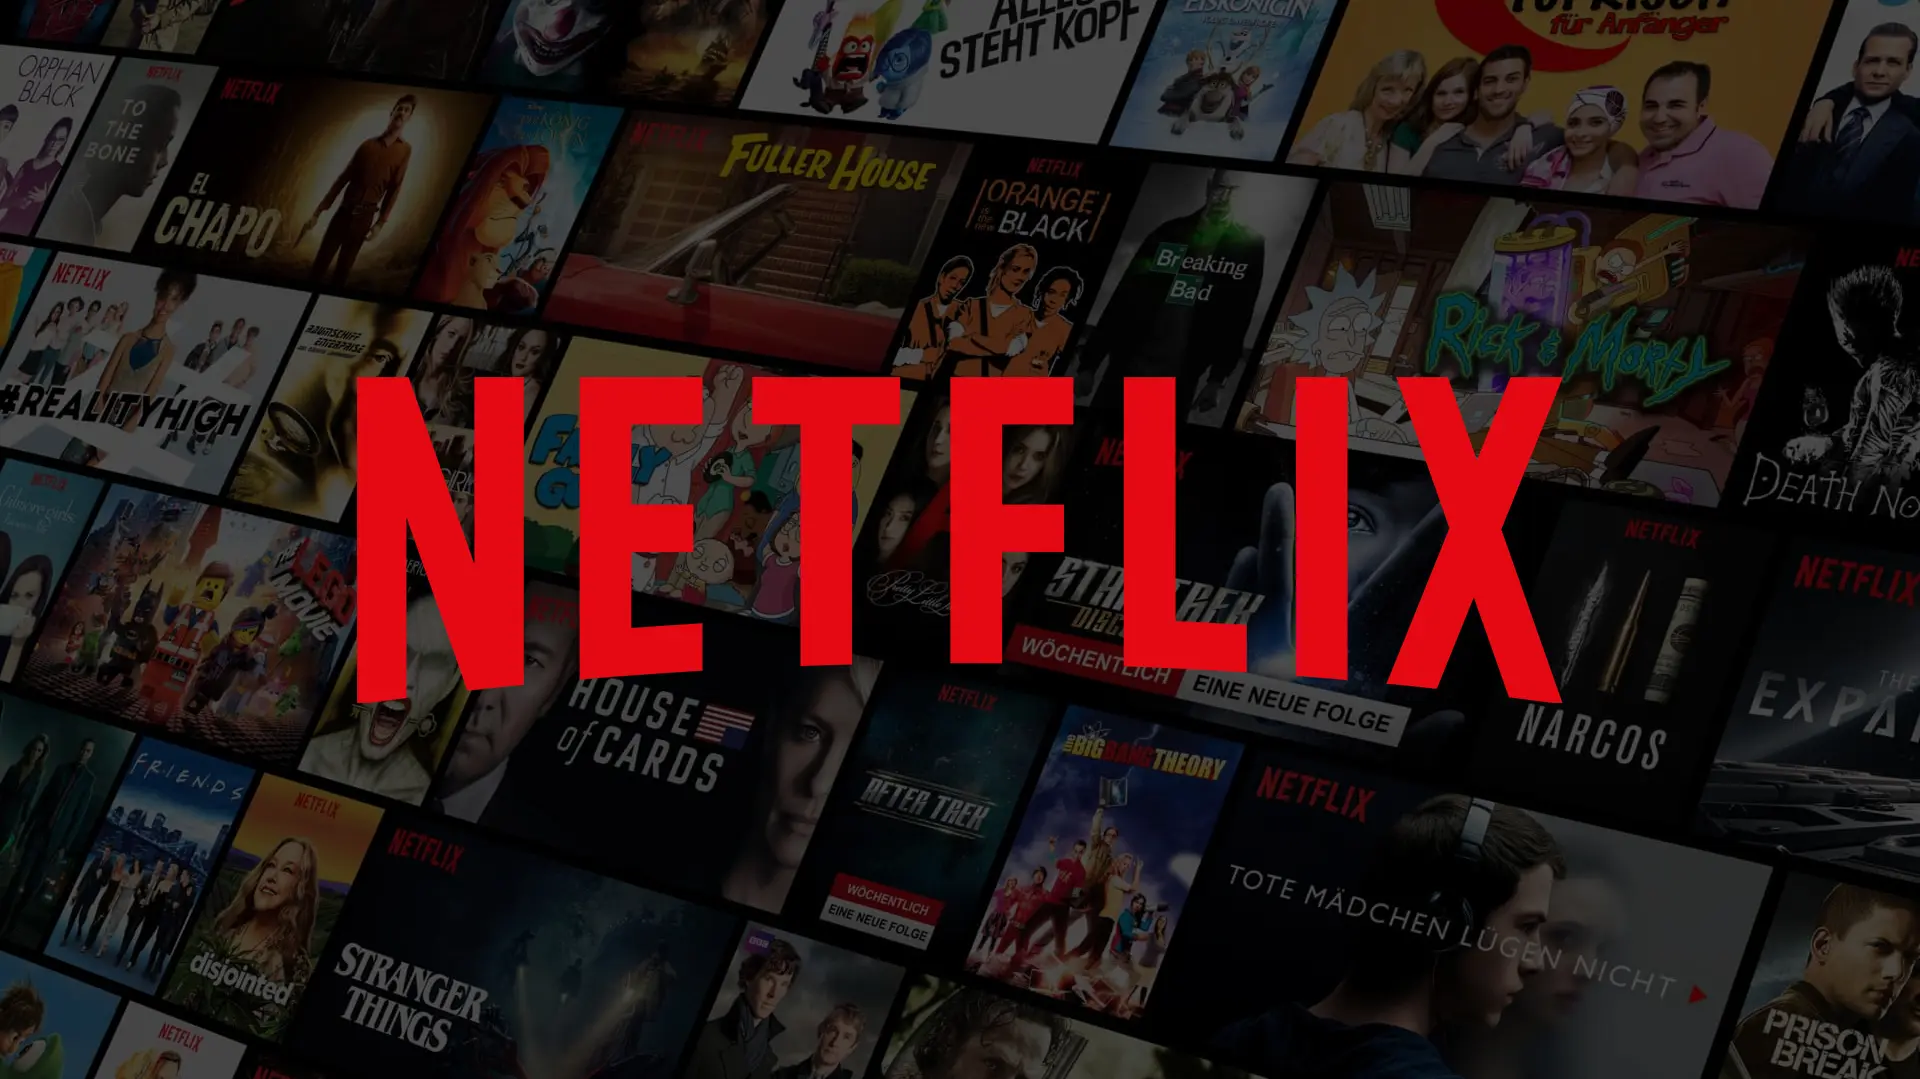 Netflix will Preise wegen Account Sharing erhöhen Titel